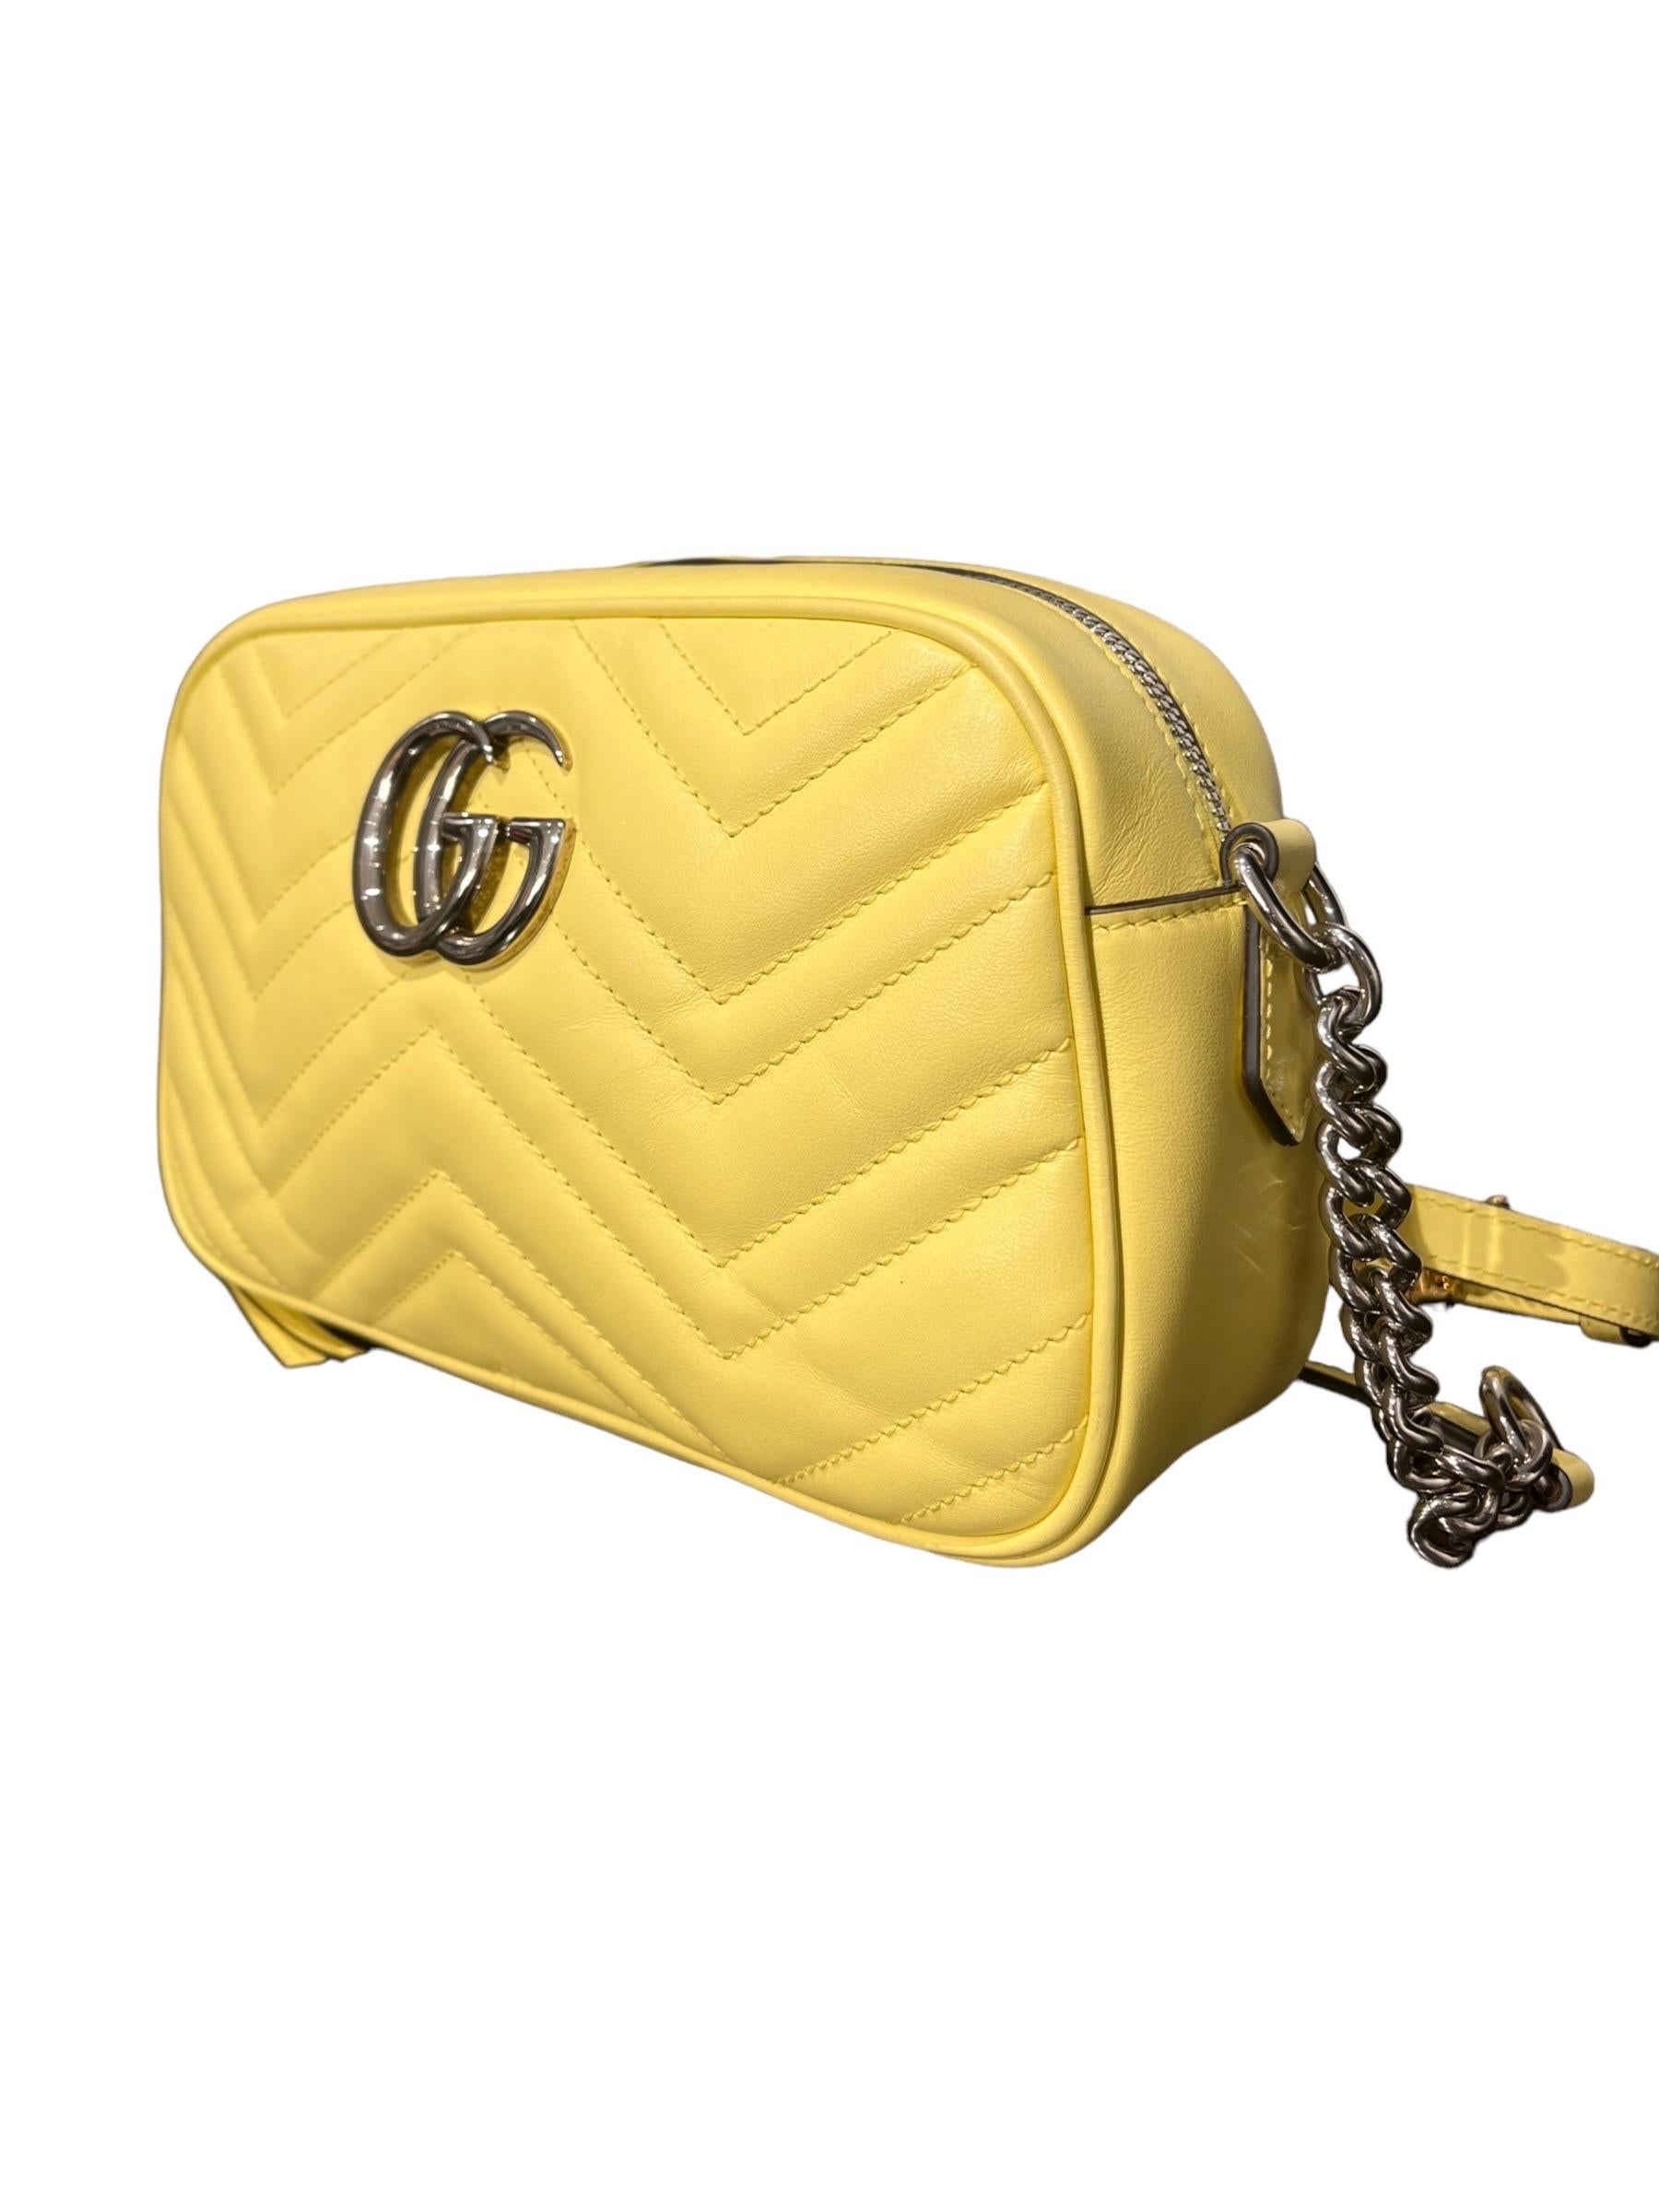 Women's Borsa a Tracolla Gucci Camera Bag Marmont Giallo Pastel For Sale